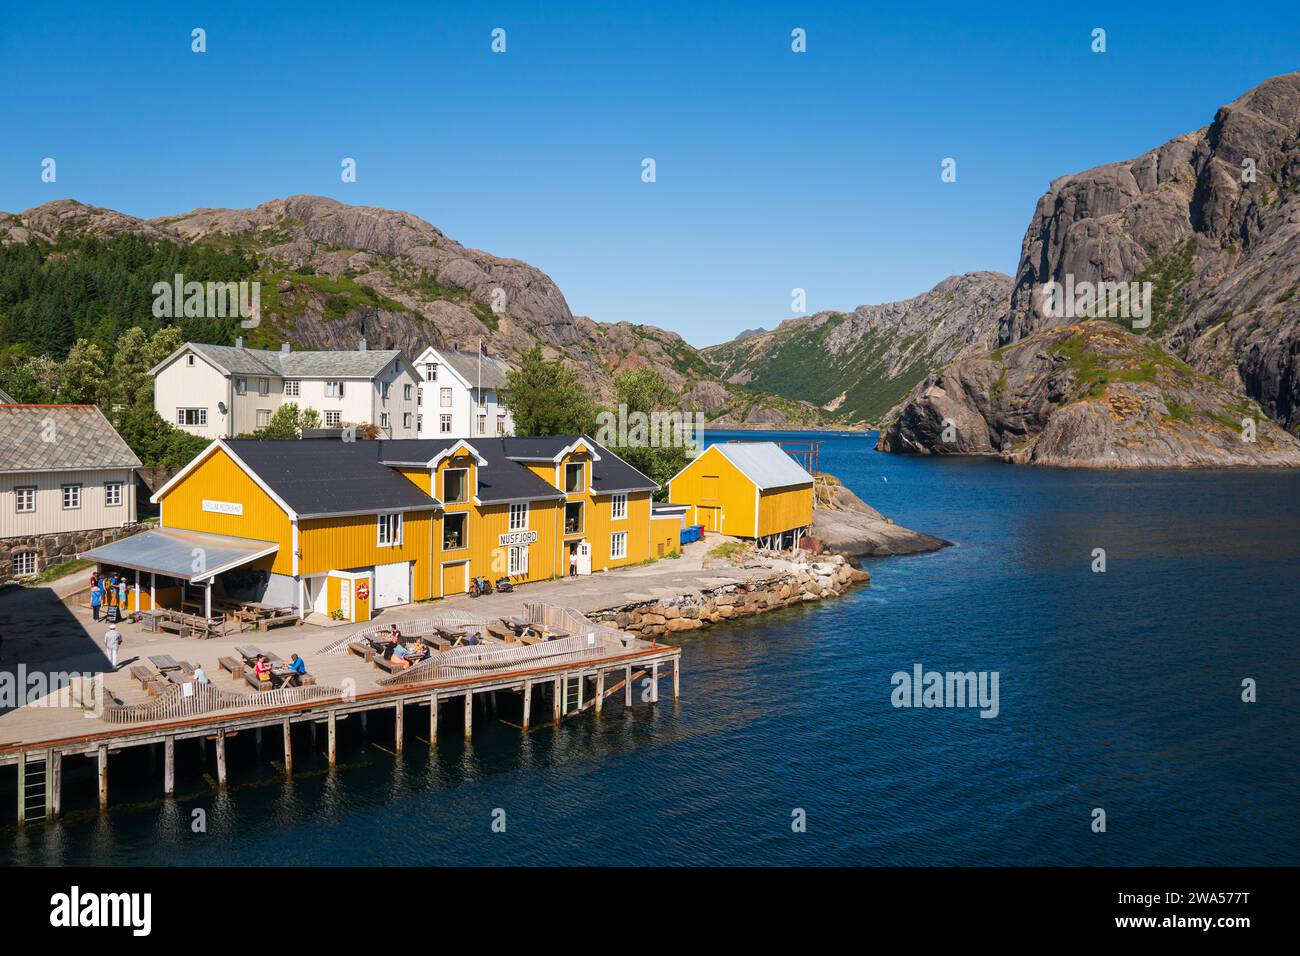 Il piccolo villaggio di Nusfjord sulla costa meridionale del Lofoten, in una luminosa giornata estiva, barche da pesca e barche a vela insieme a case colorate. Foto Stock